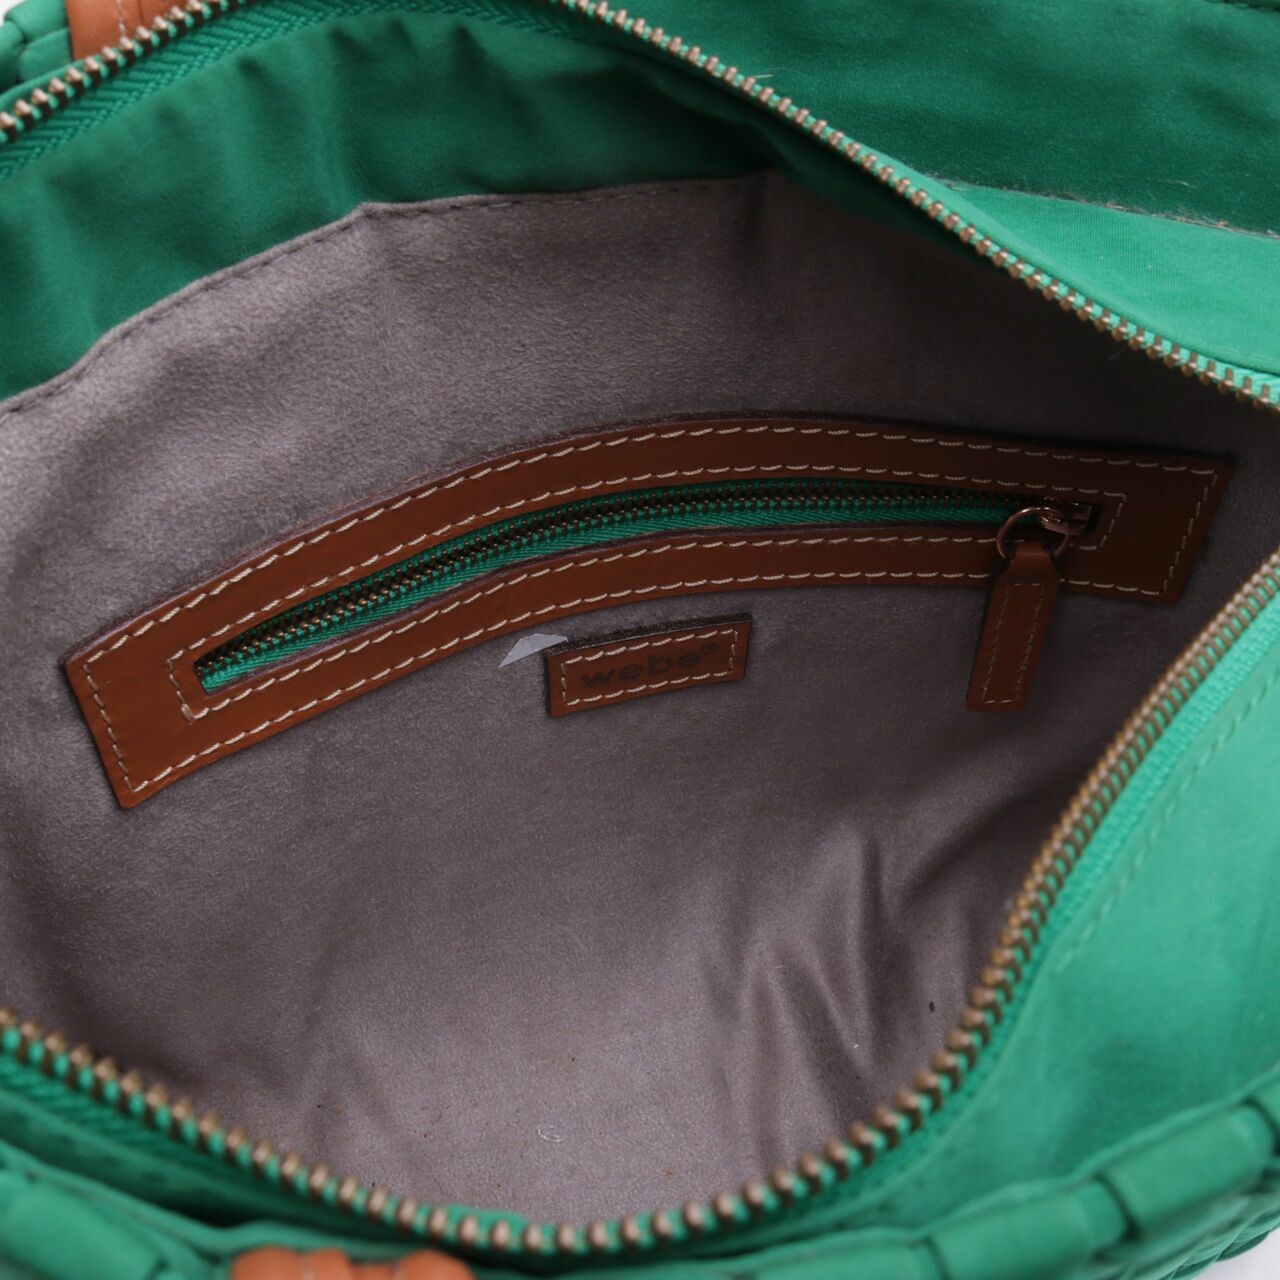 Webe Green Tote Bag